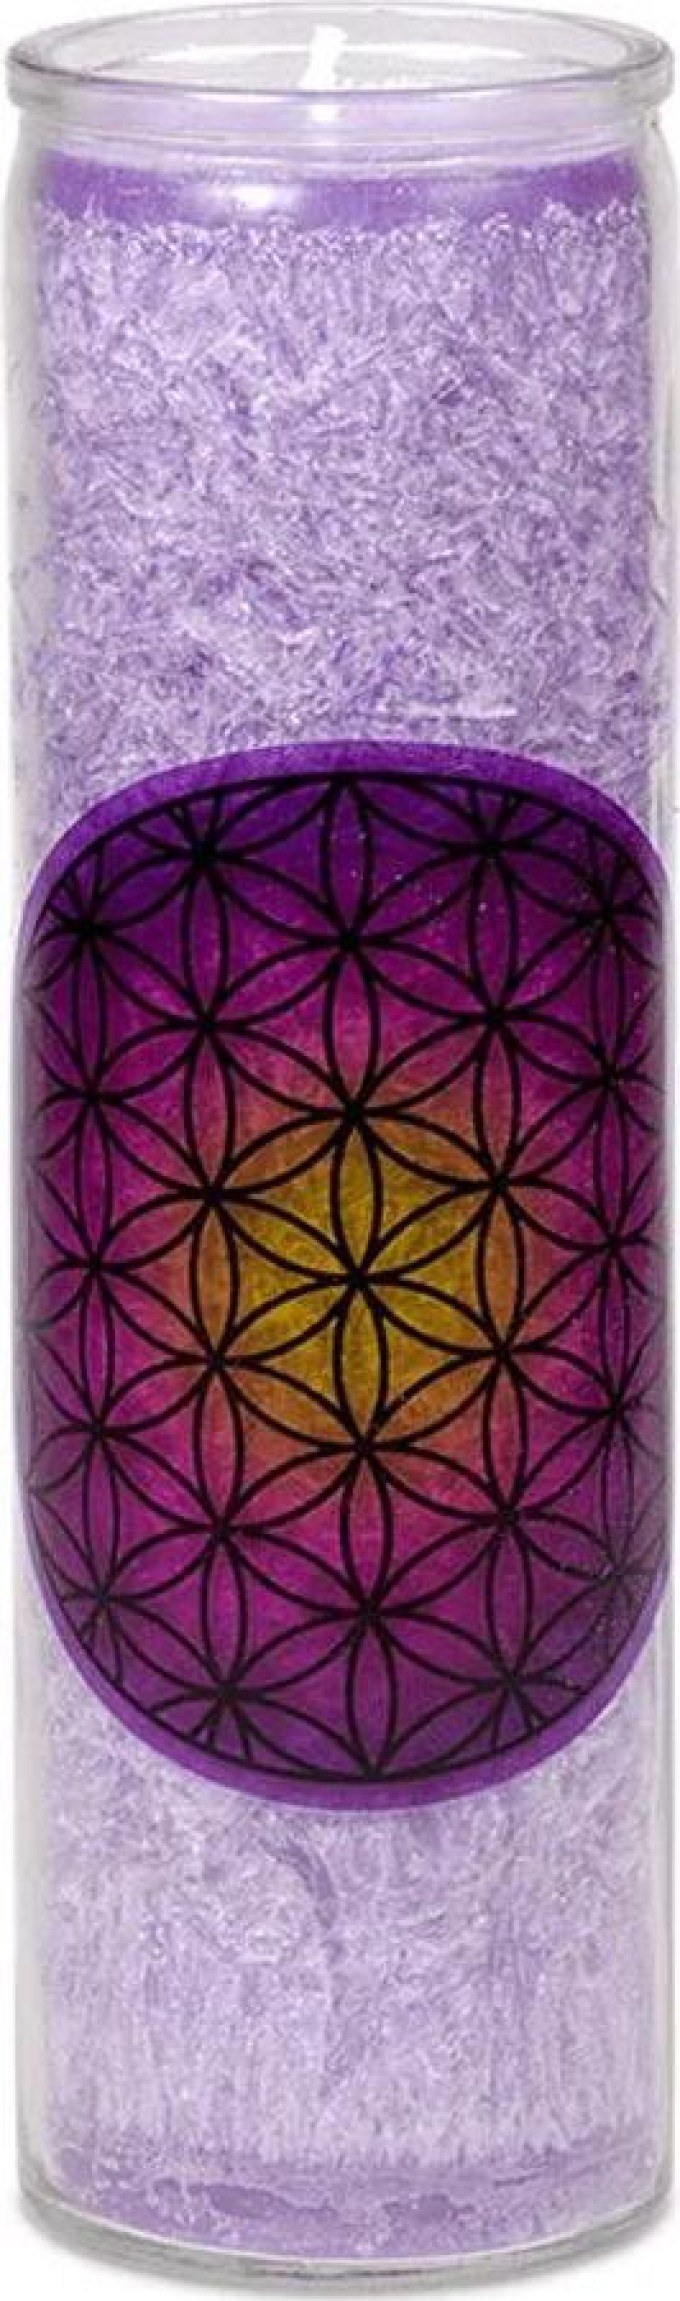 Mani Bhadra Vonná svíčka květ života - fialová